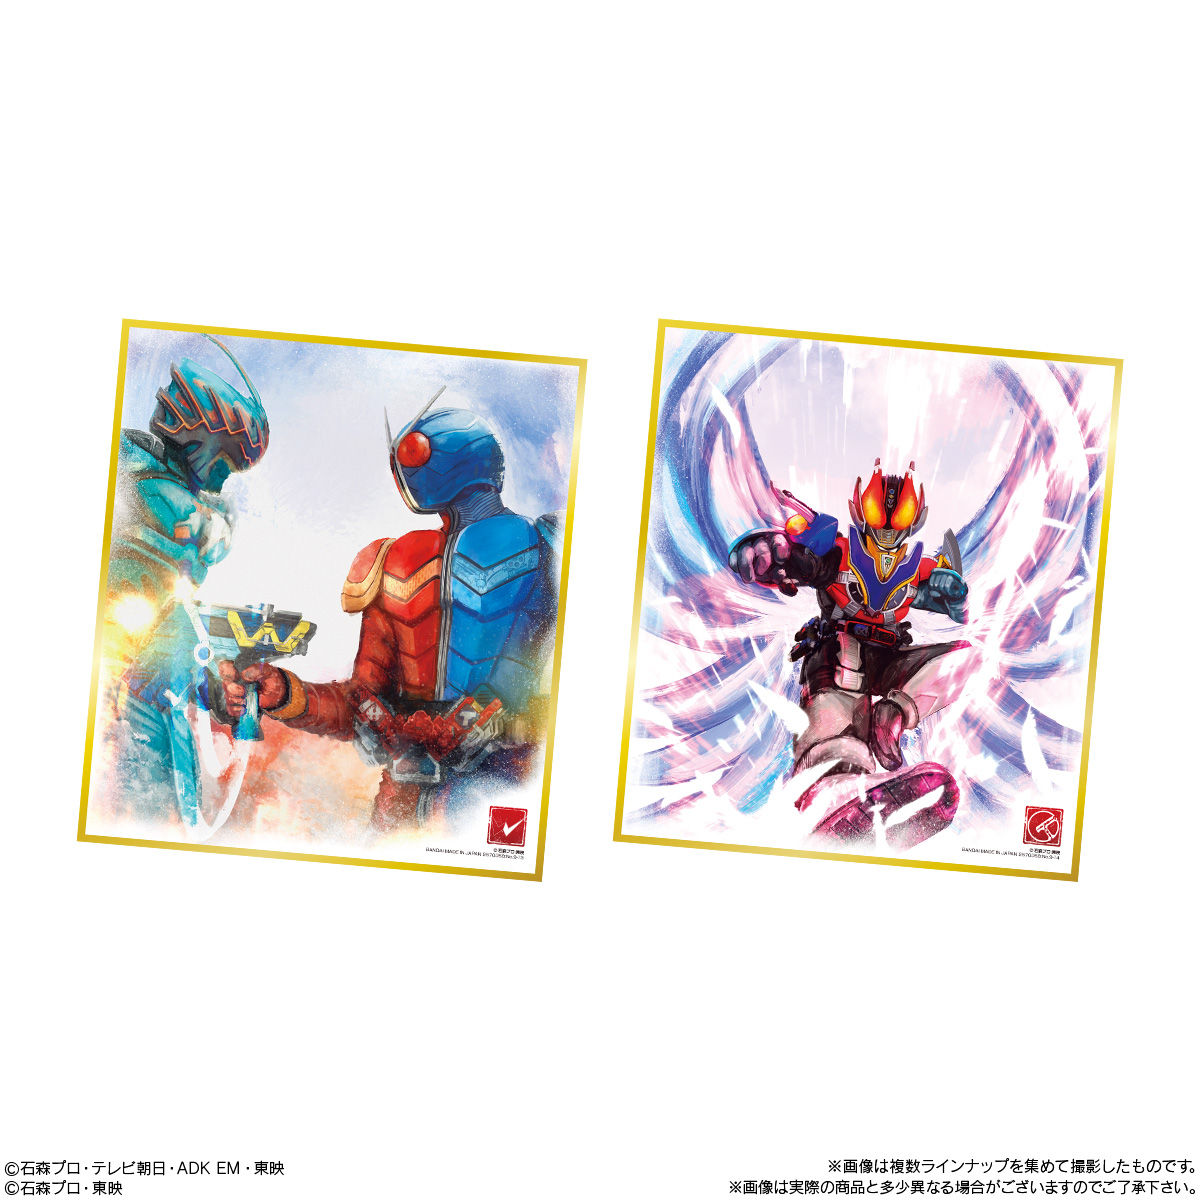 【食玩】『仮面ライダー色紙ART9』10個入りBOX-008